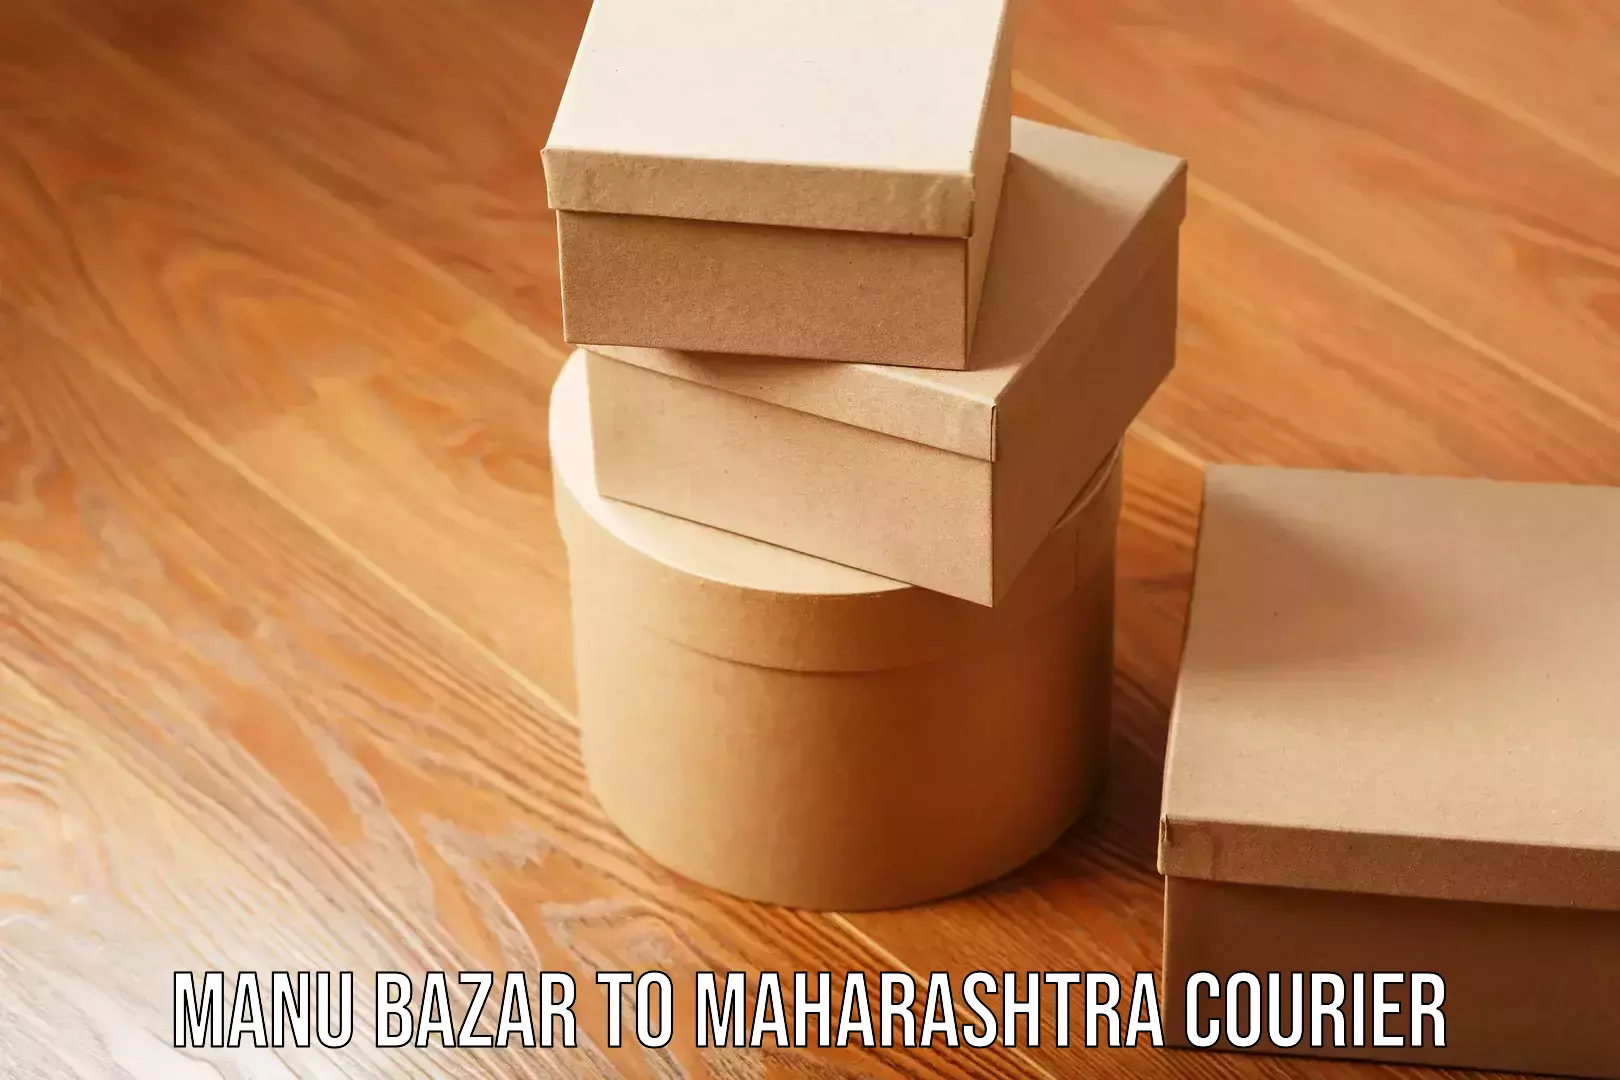 User-friendly courier app Manu Bazar to Maharashtra